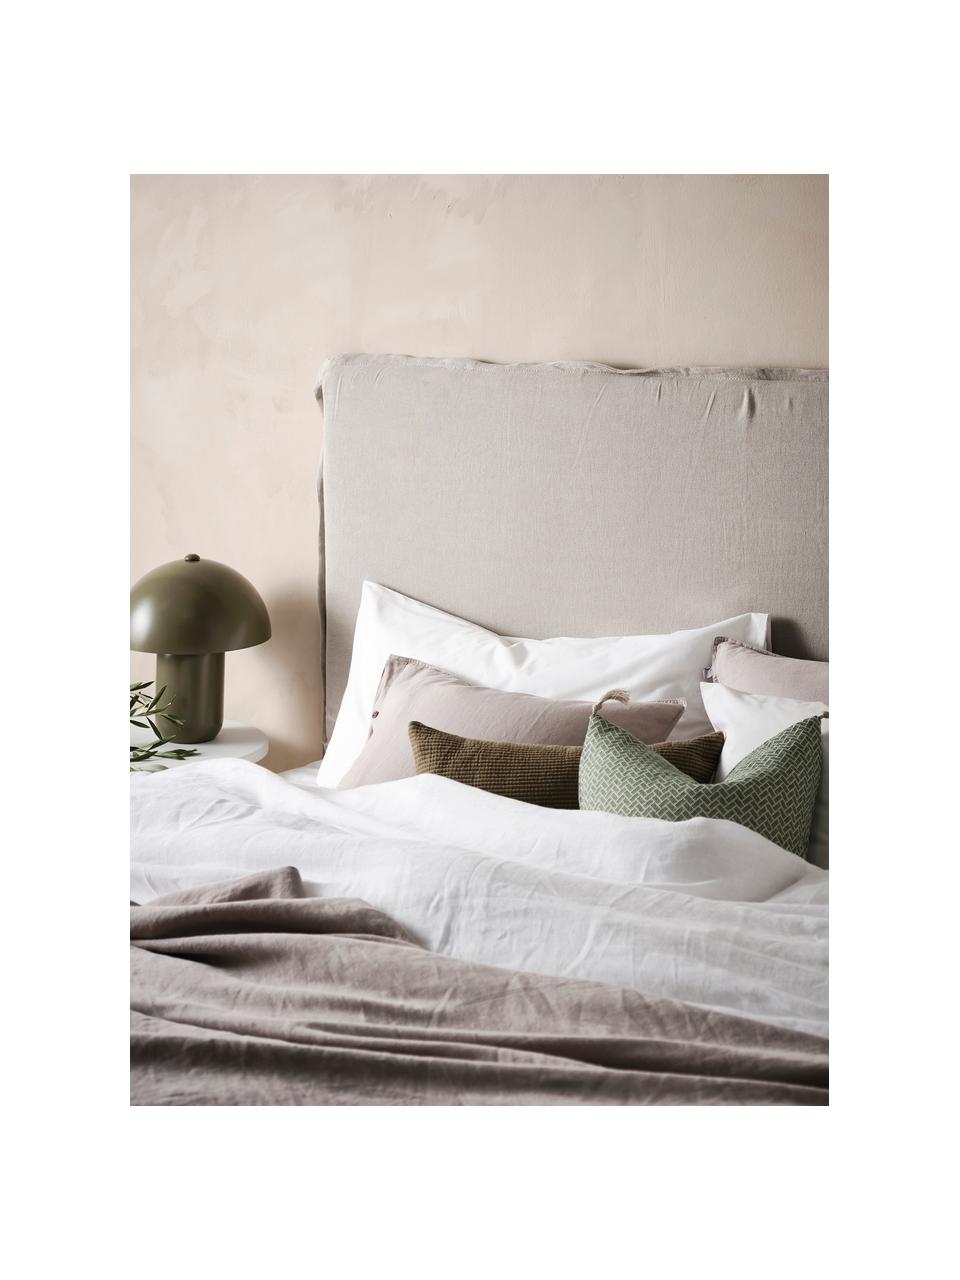 Tête de lit en lin Palma, Lin beige clair, larg. 160 x haut. 122 cm